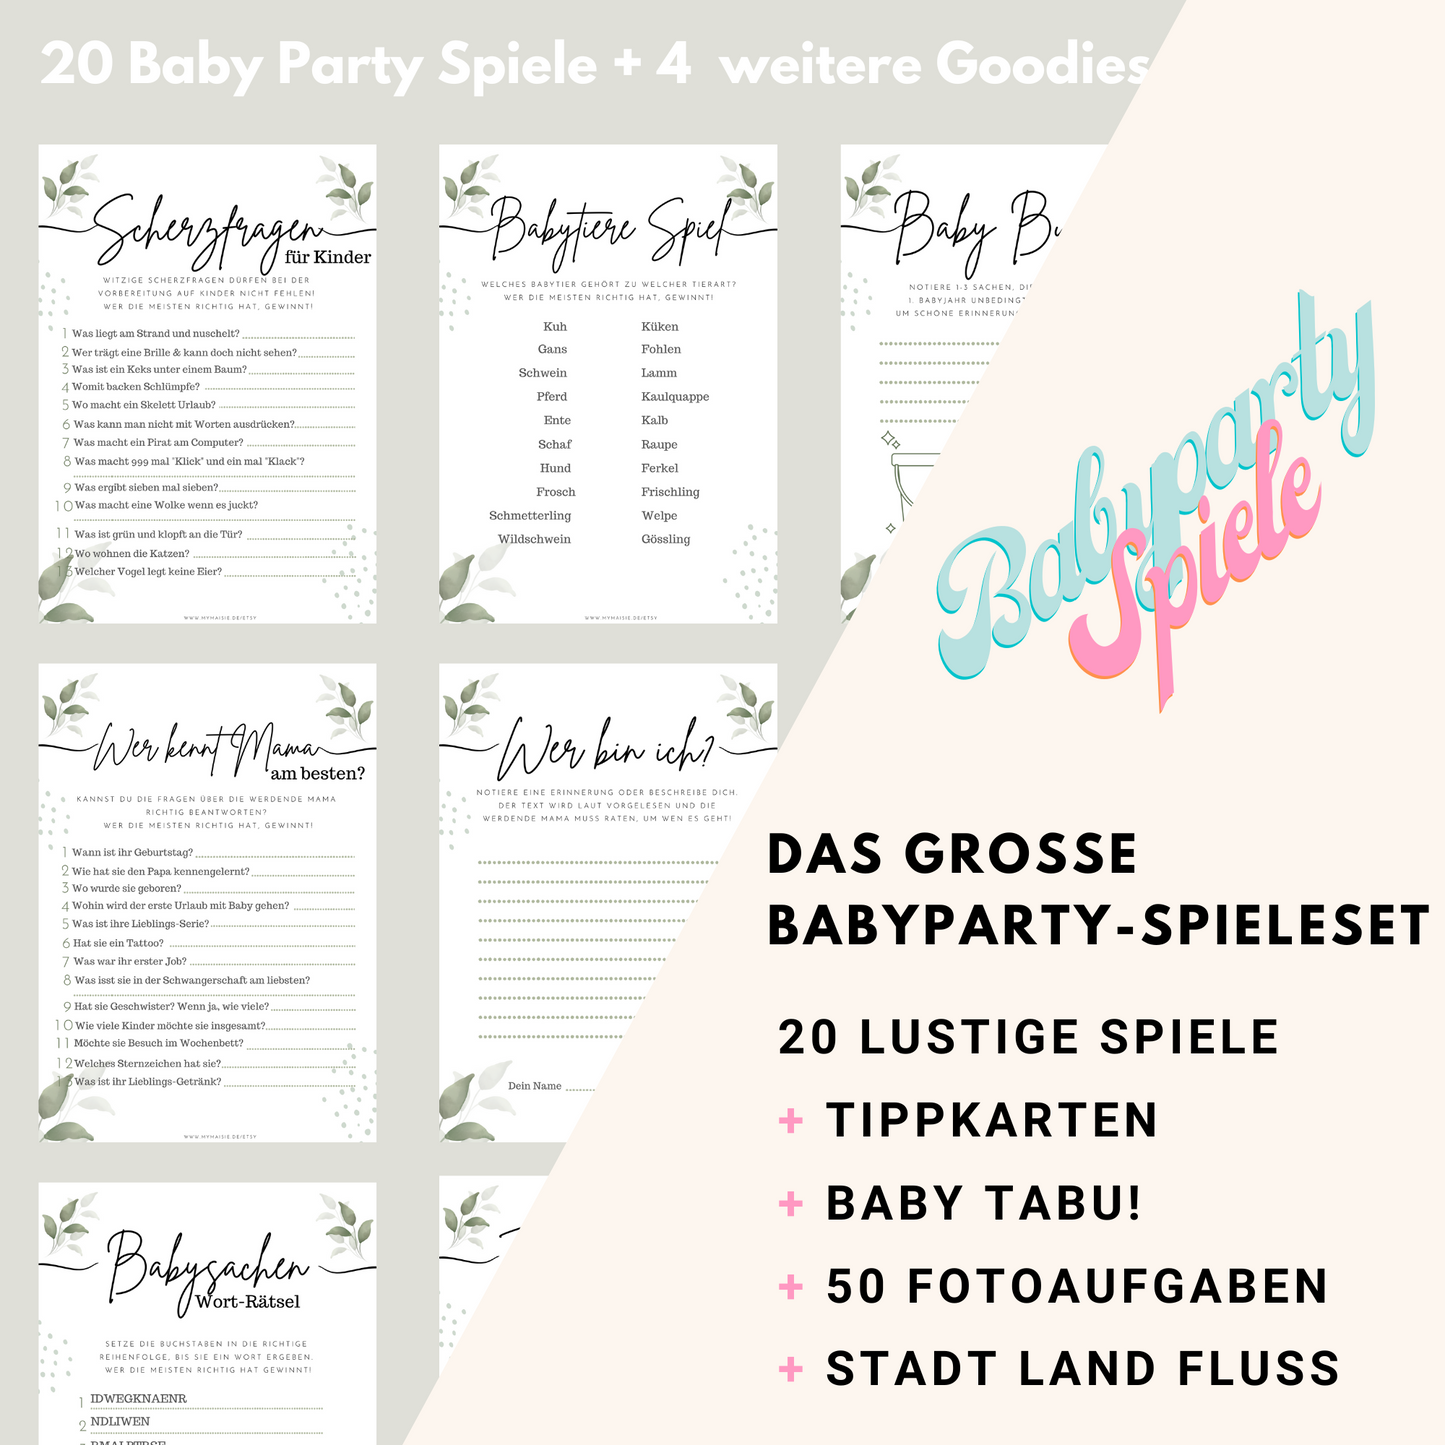 Das GROßE Babyparty Spiele Set auf Deutsch zum Ausdrucken - 24 Lustige Spielidee für die perfekte Babyshower mit Baby Tabu & Fotoaufgaben! - BabypartySpiele